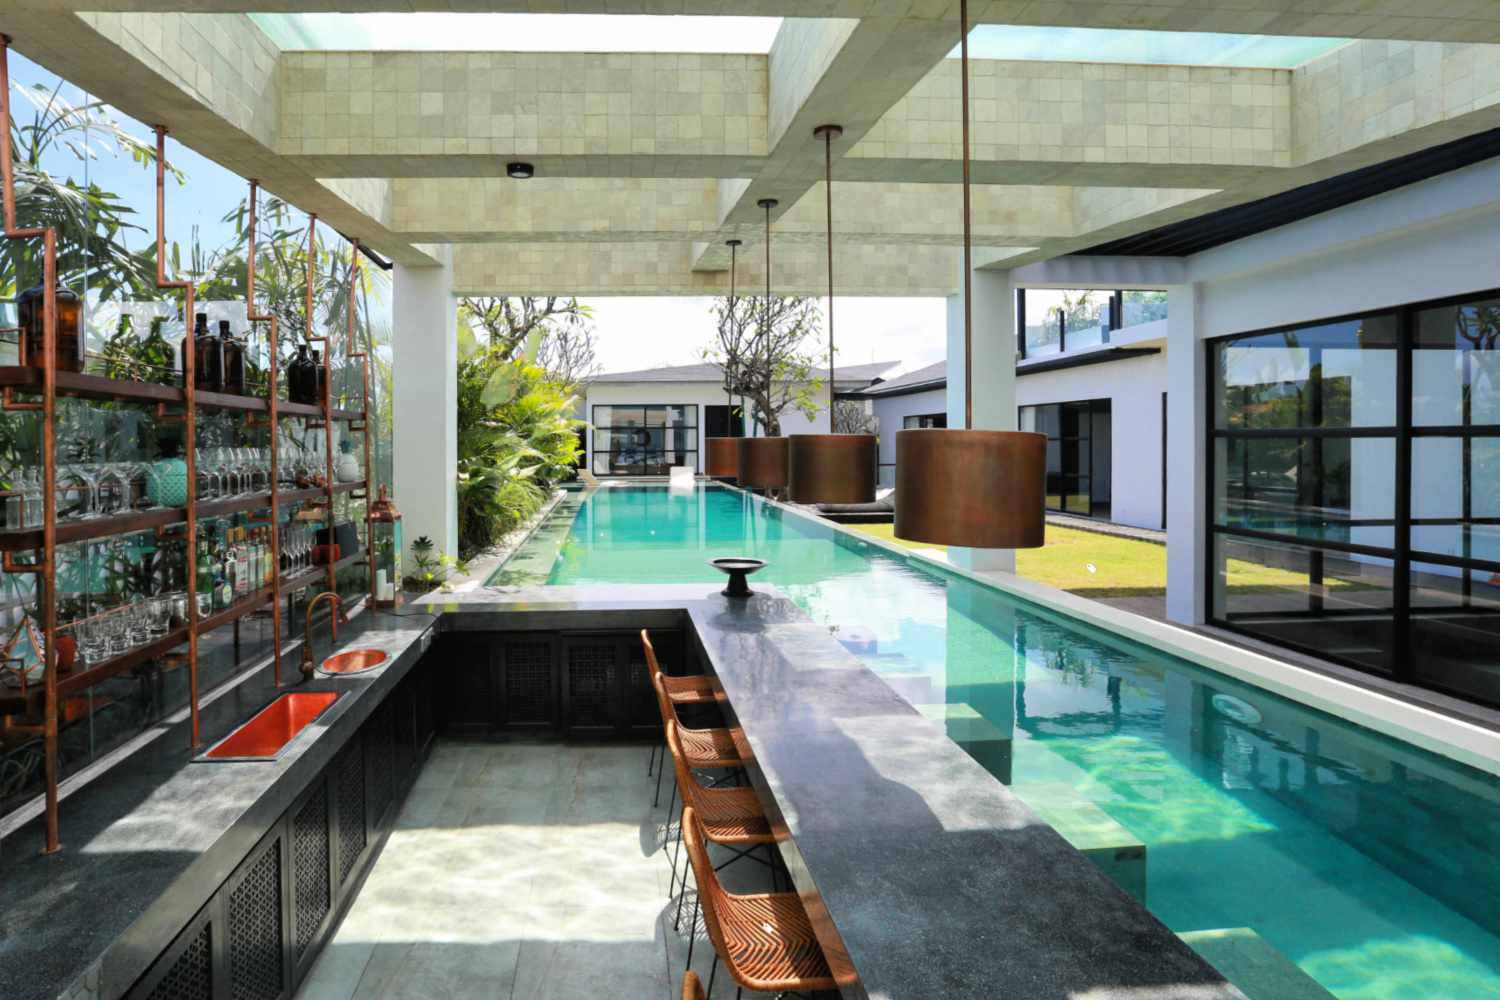 Thiết kế bể bơi trong nhà kiểu dáng độc đáo